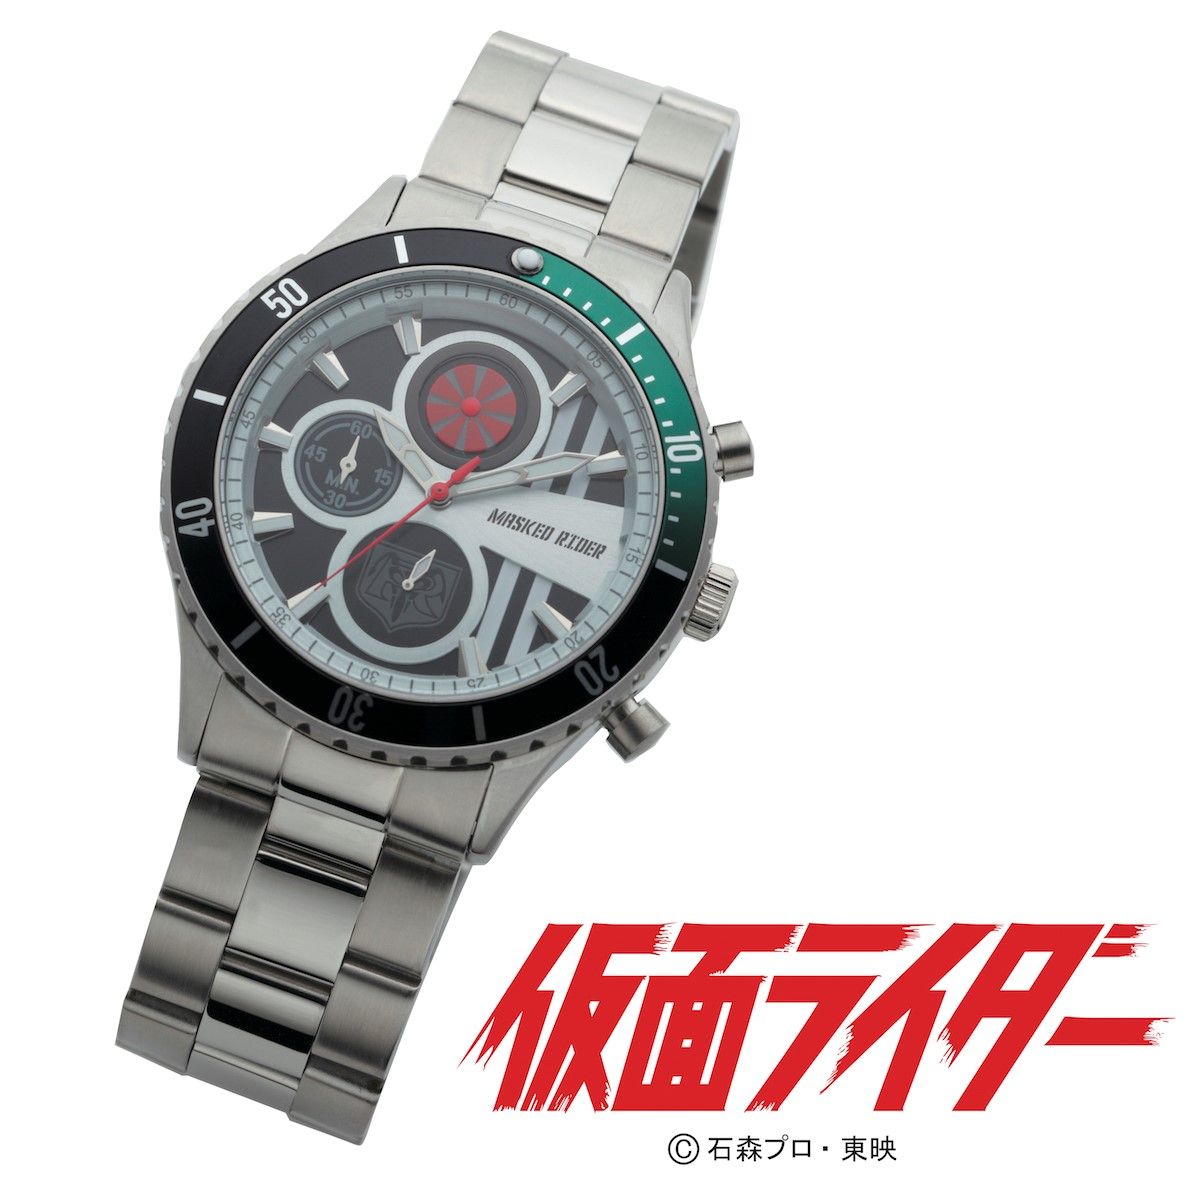 昭和仮面ライダー クロノグラフ腕時計【Live Action Watch】〔1号・X 